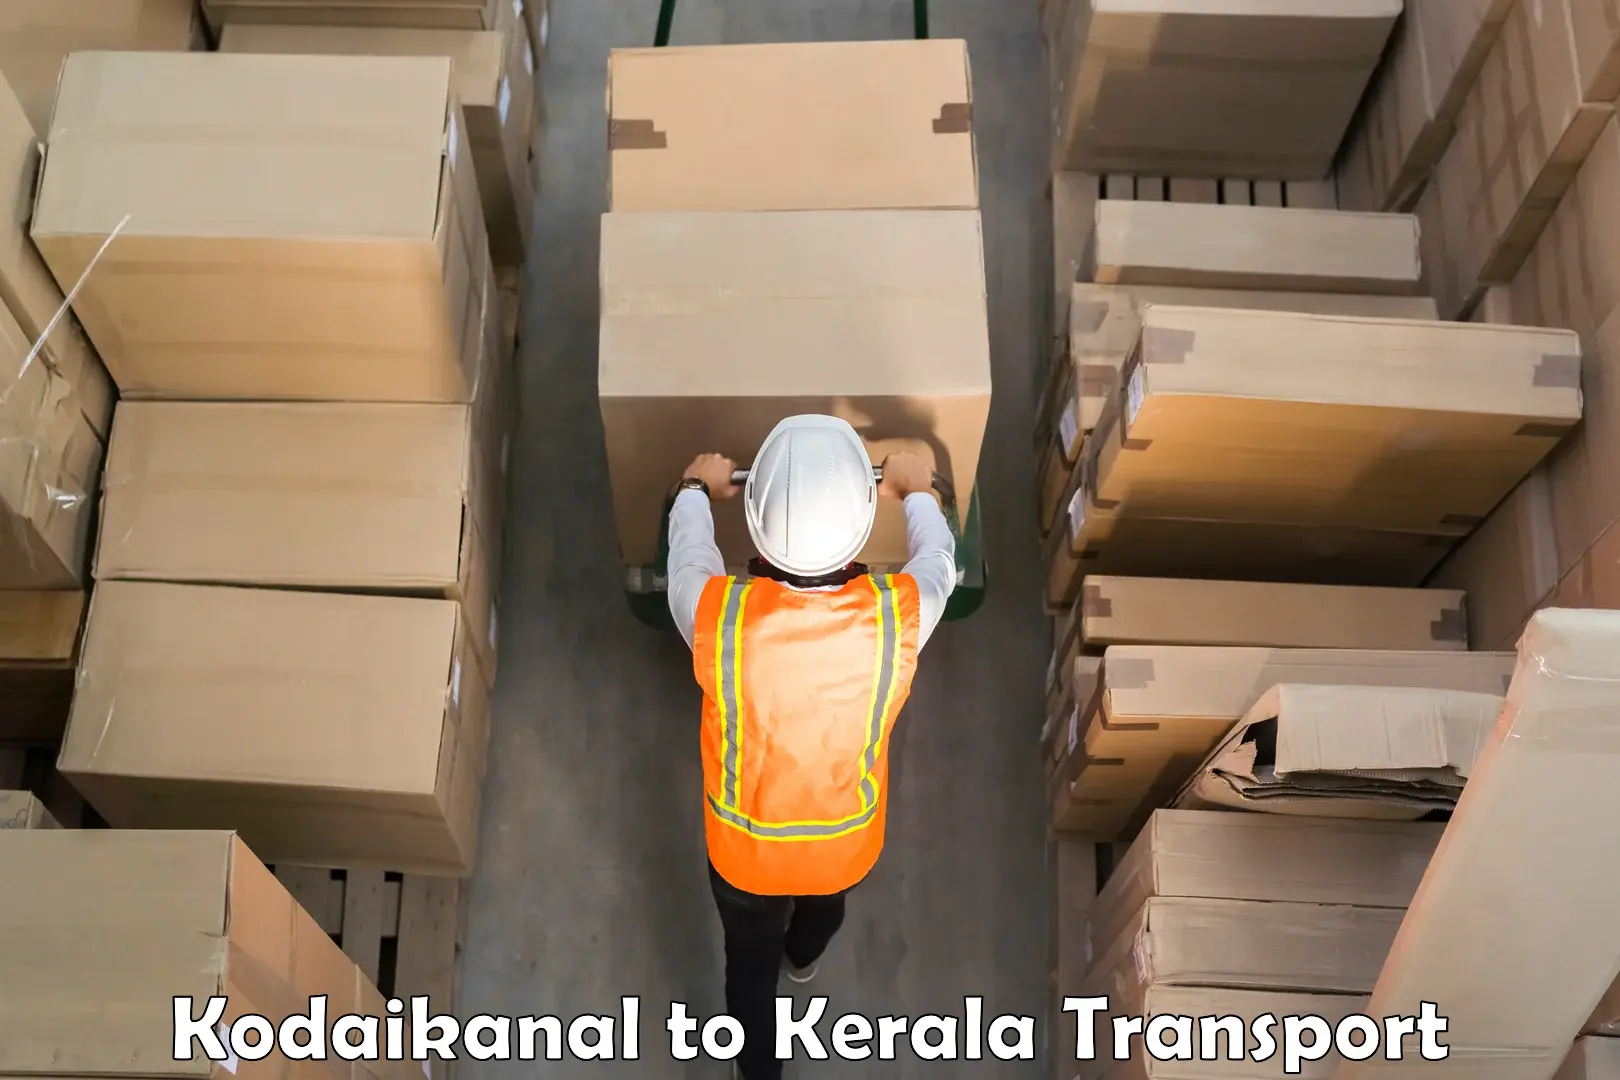 Nearest transport service Kodaikanal to Tiruvalla